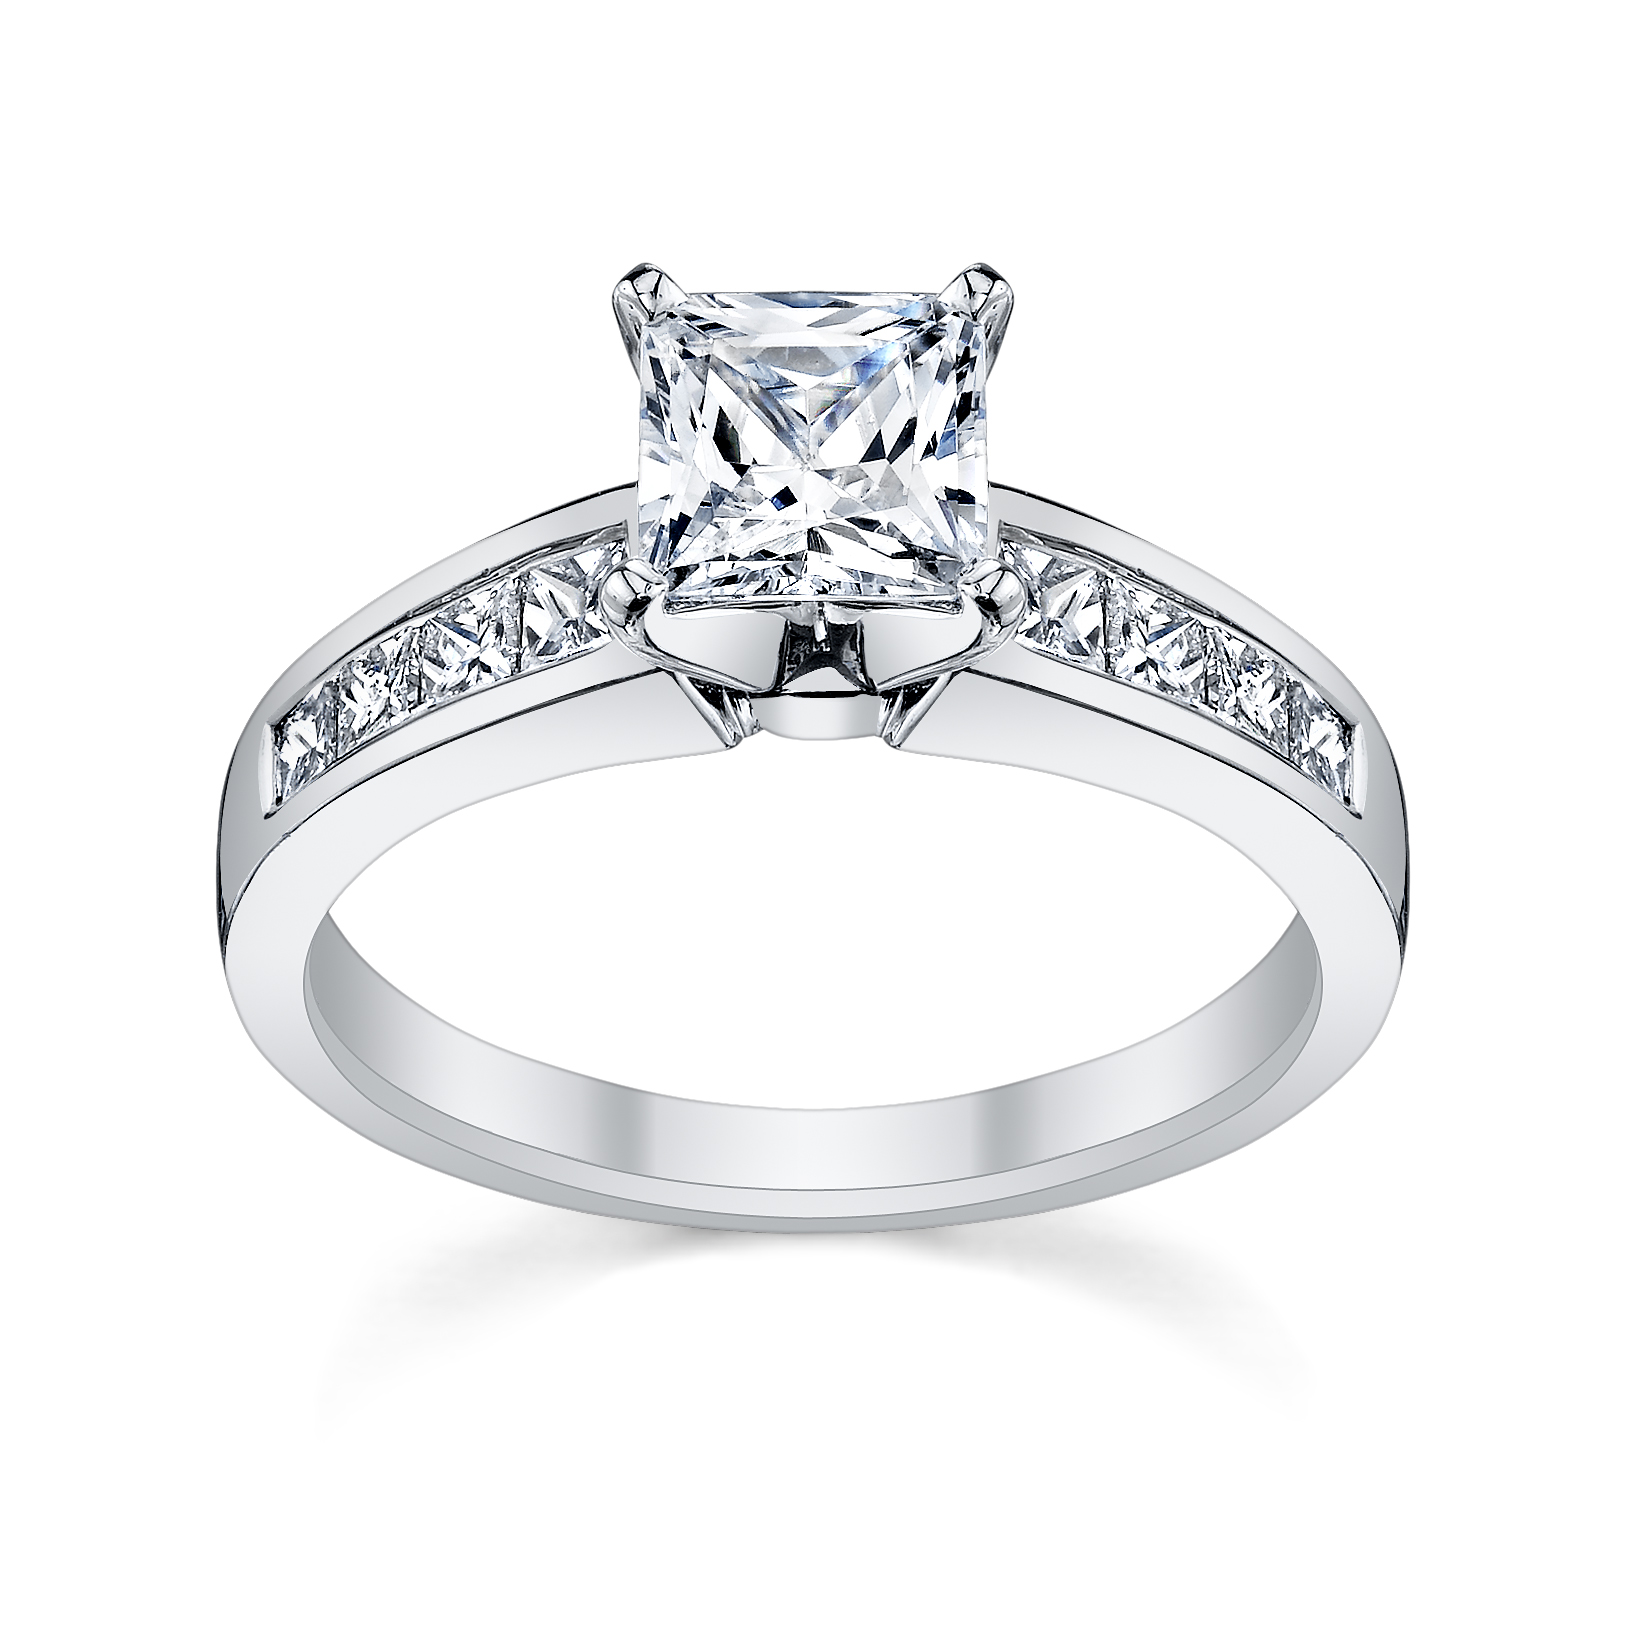 6 Princess Cut Engagement Rings She'll Love - Robbins Brothers Blog